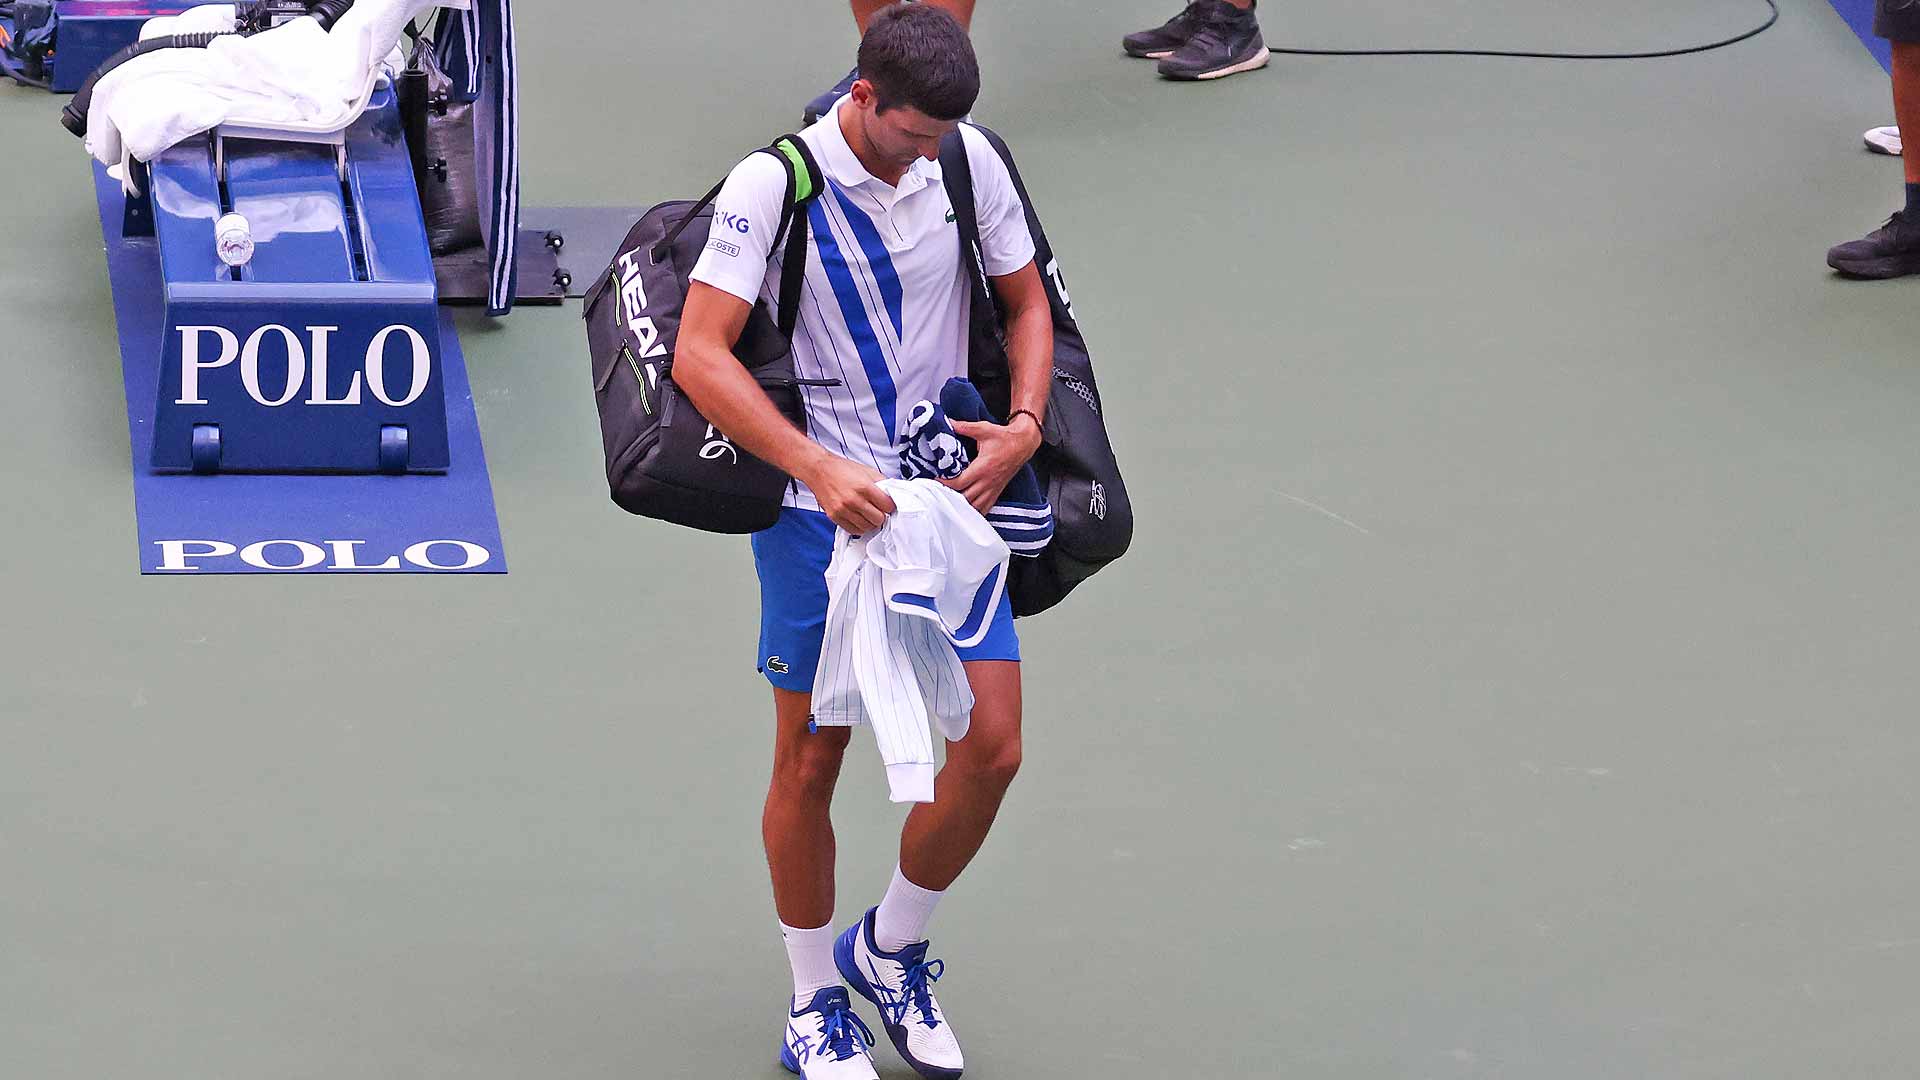 <a href='https://www.atptour.com/en/players/novak-djokovic/d643/overview'>Novak Djokovic</a>